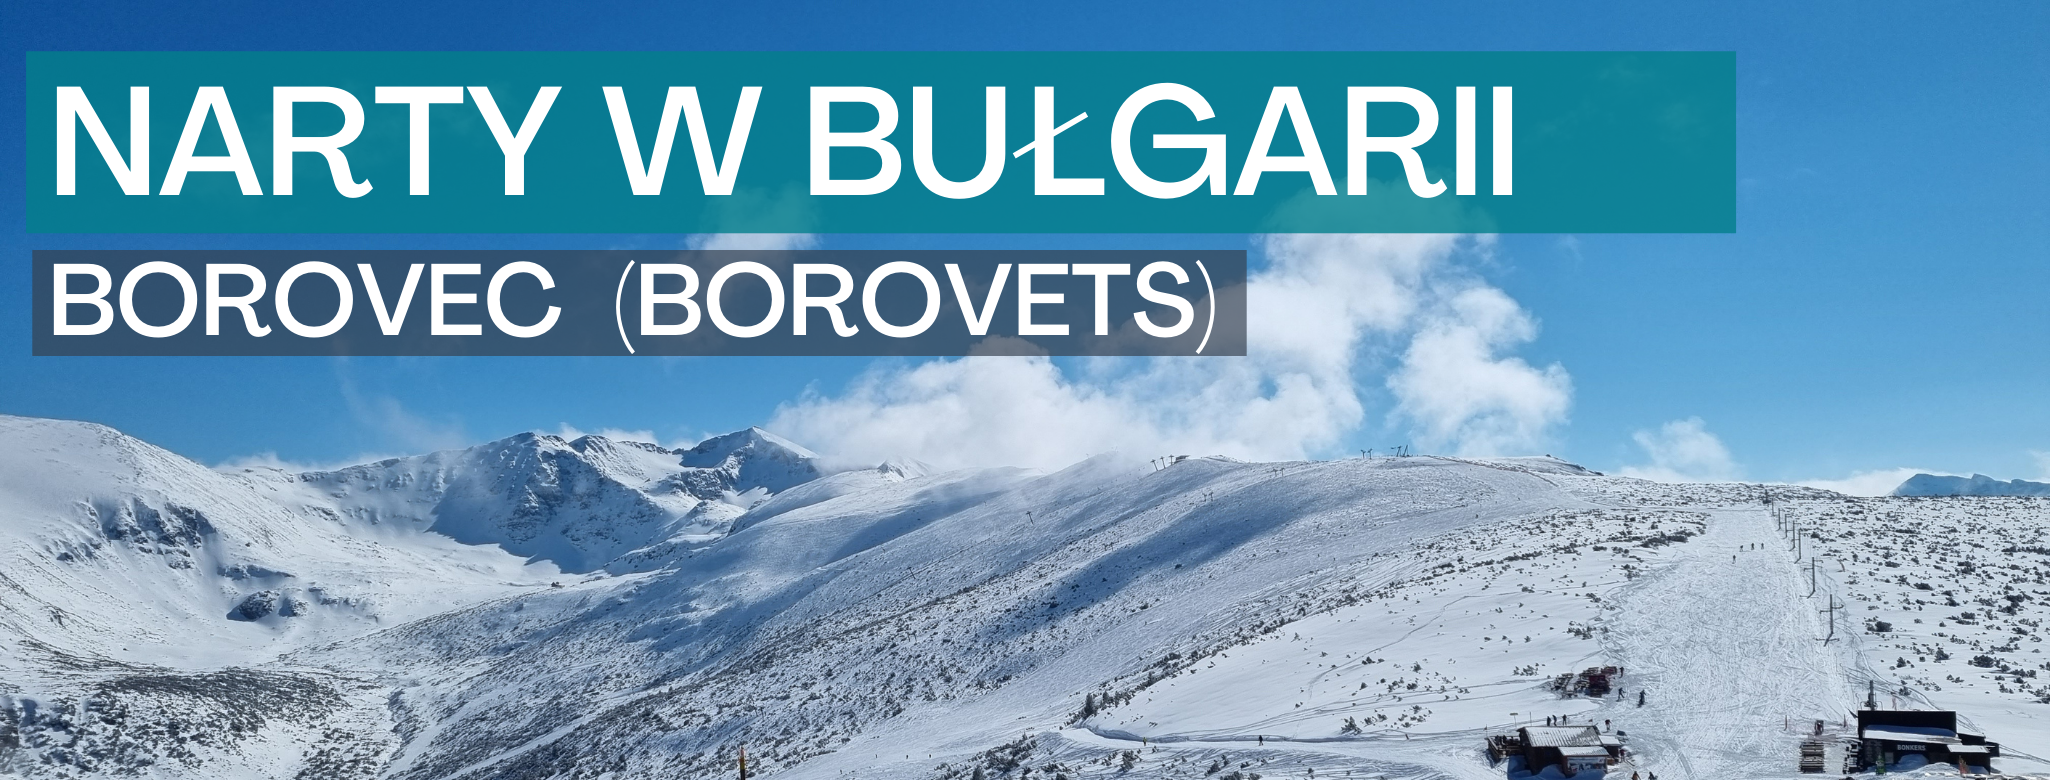 bułgaria_borovec